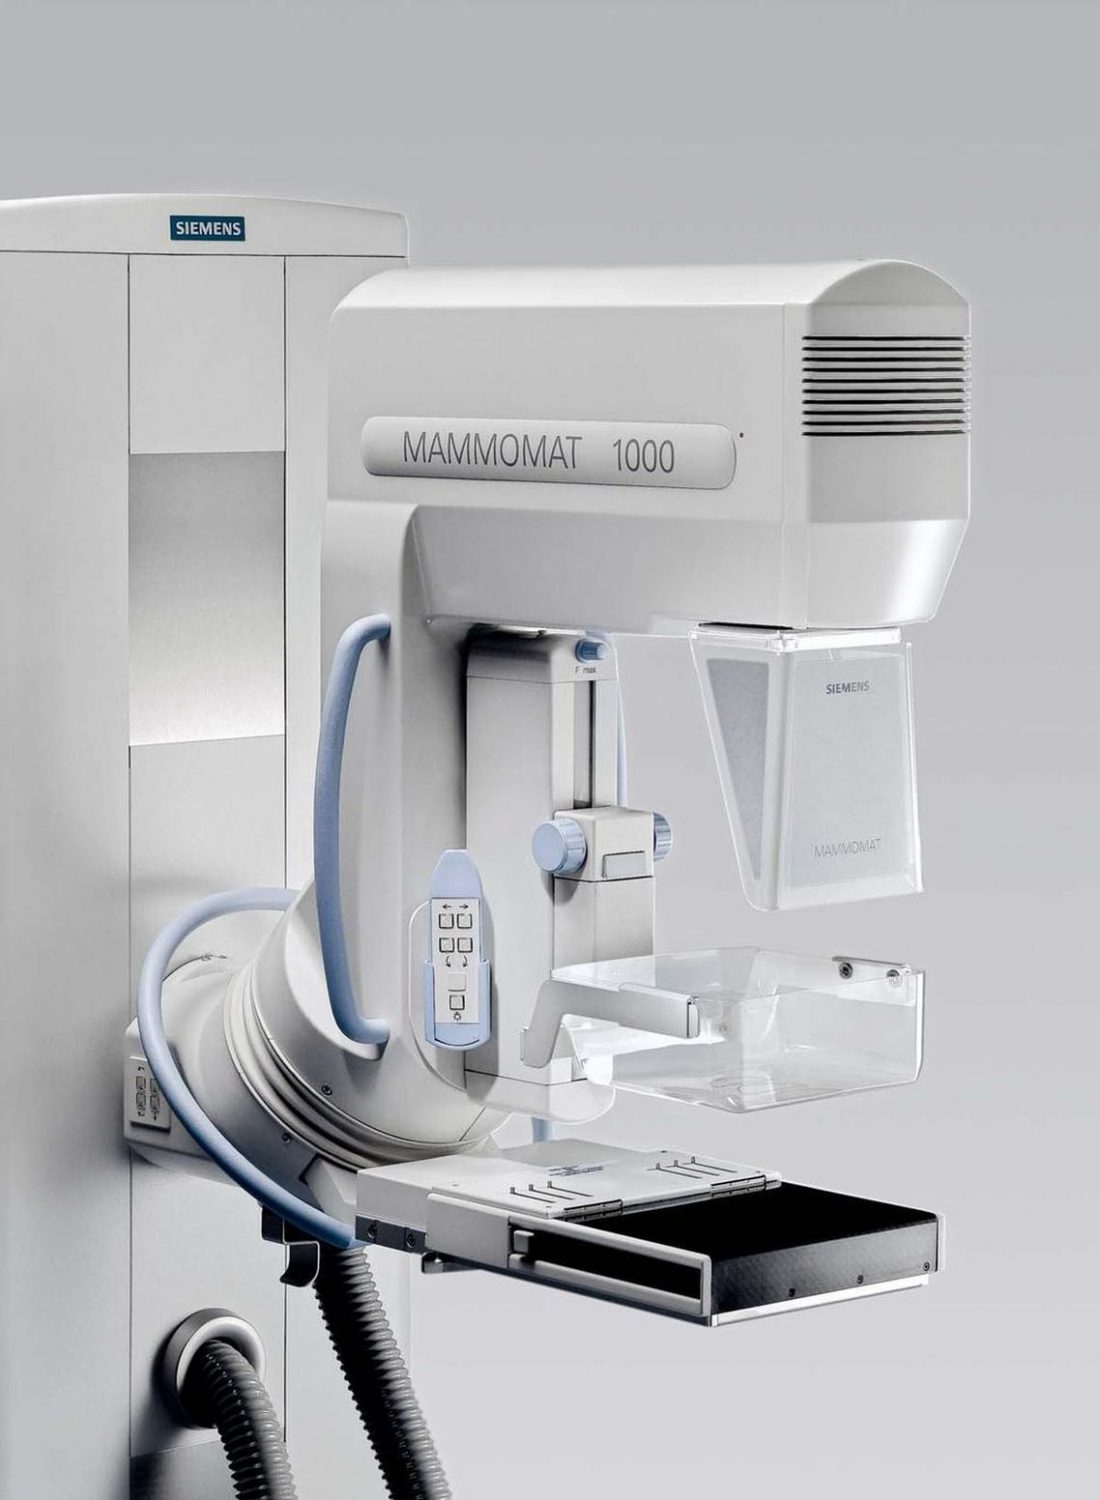 Siemens MAMMOMAT 1000 mammográfia készülék